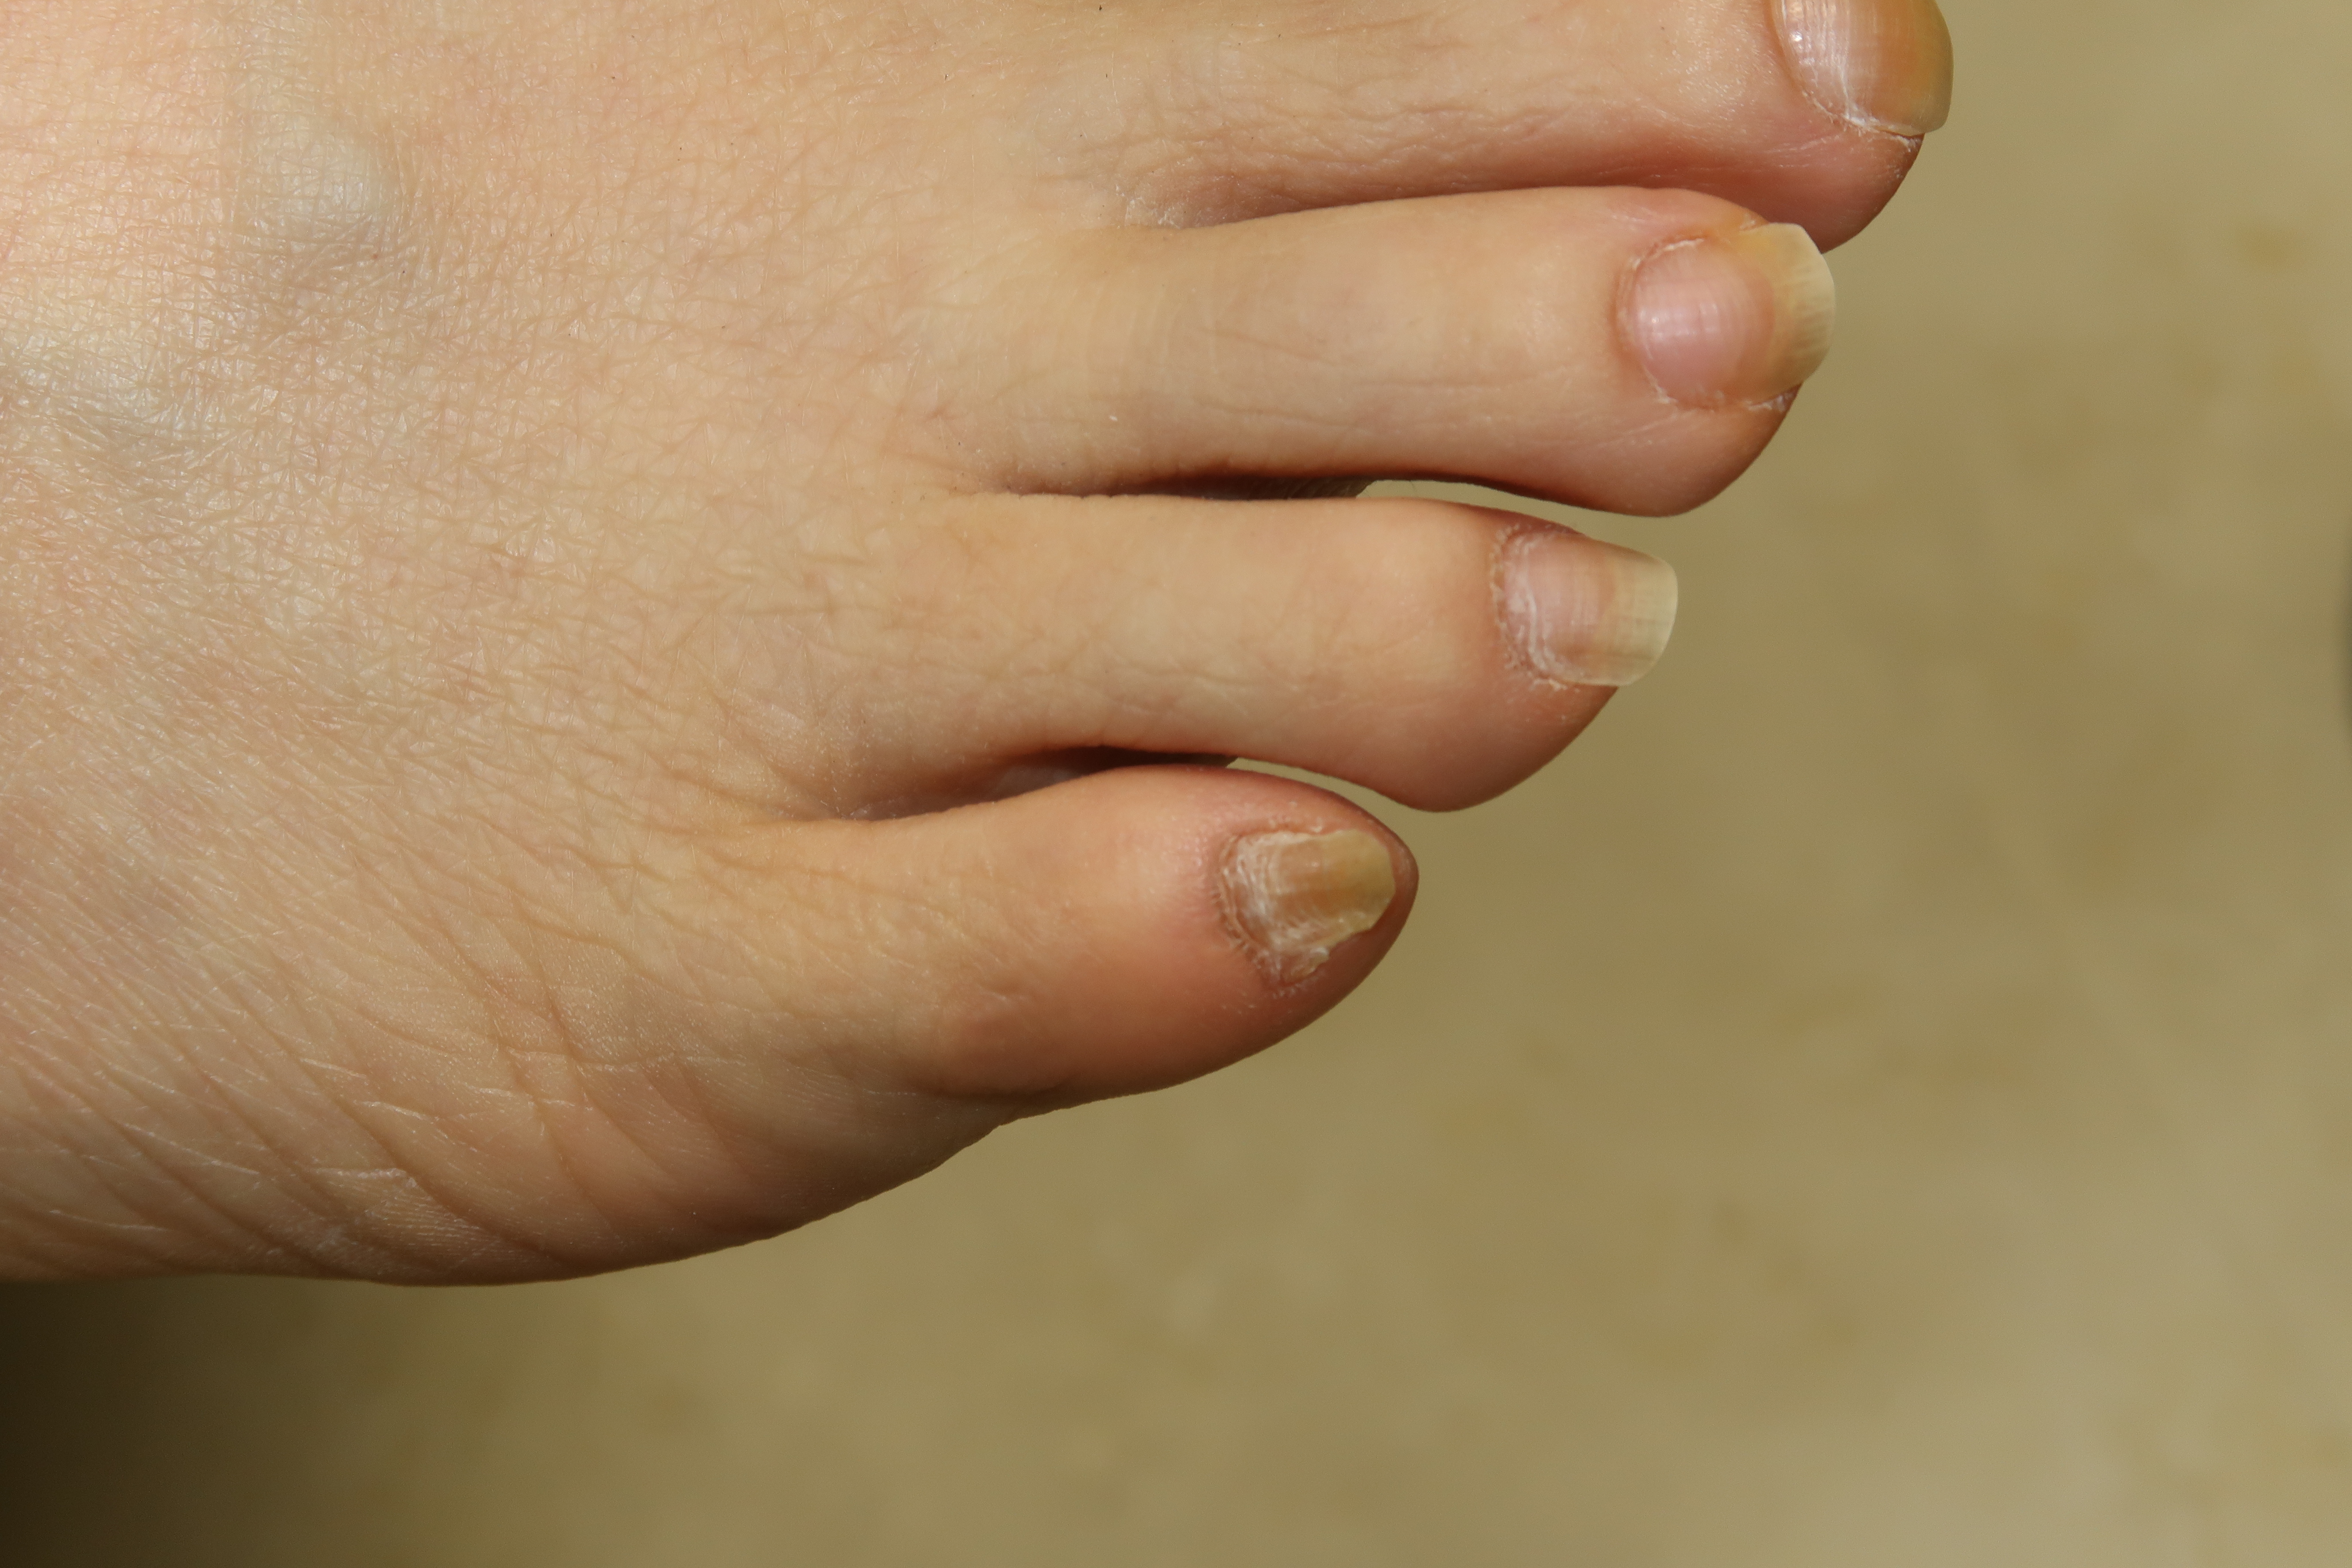 あなたの足の小指の爪 変形していませんか 一般社団法人足の番人 足の知識 活動報告